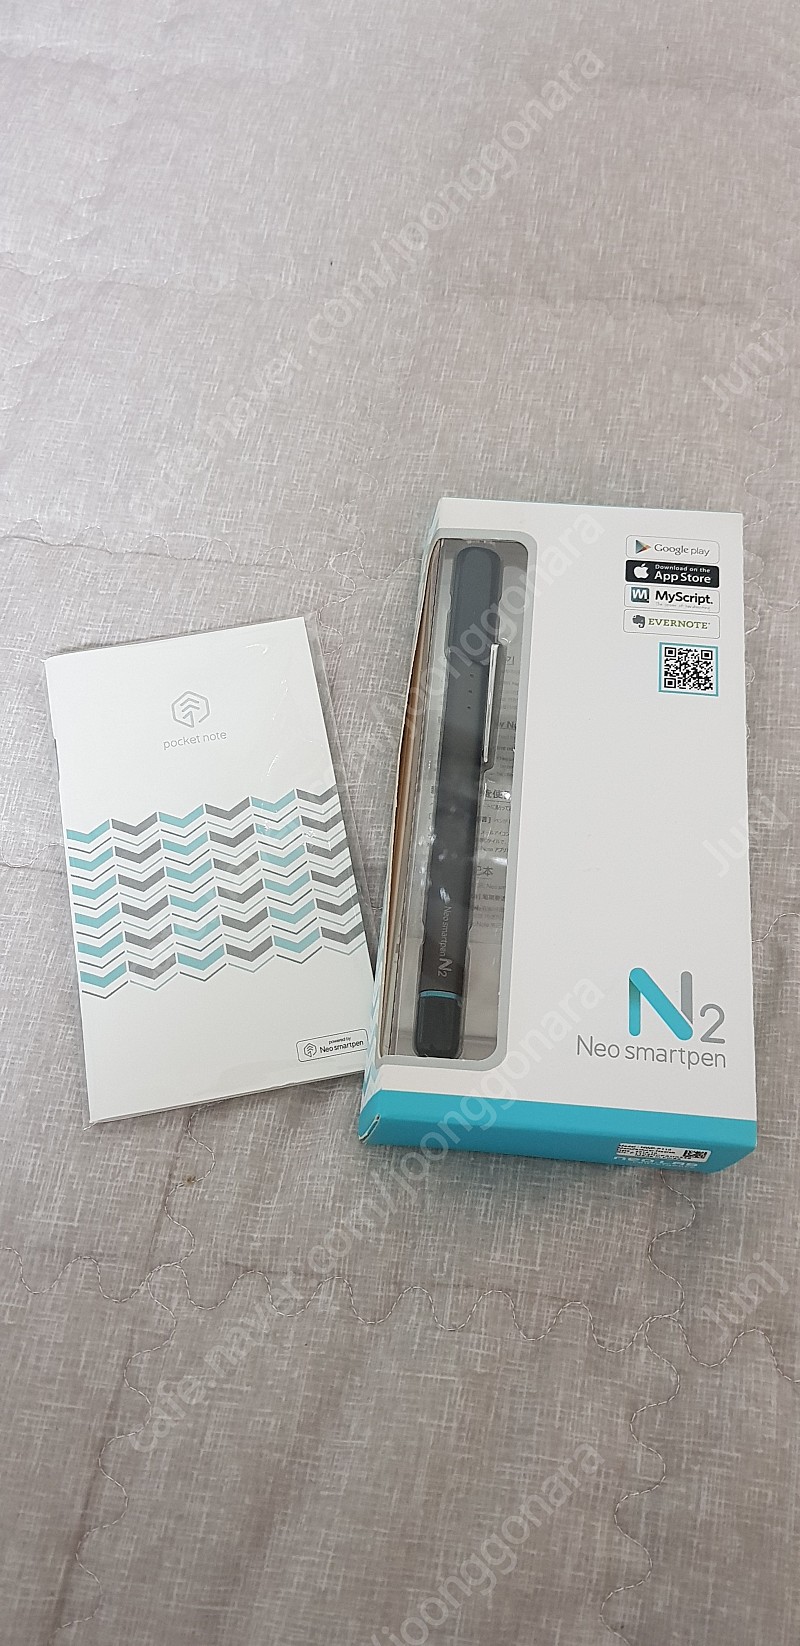 네오스마트펜 N2 판매